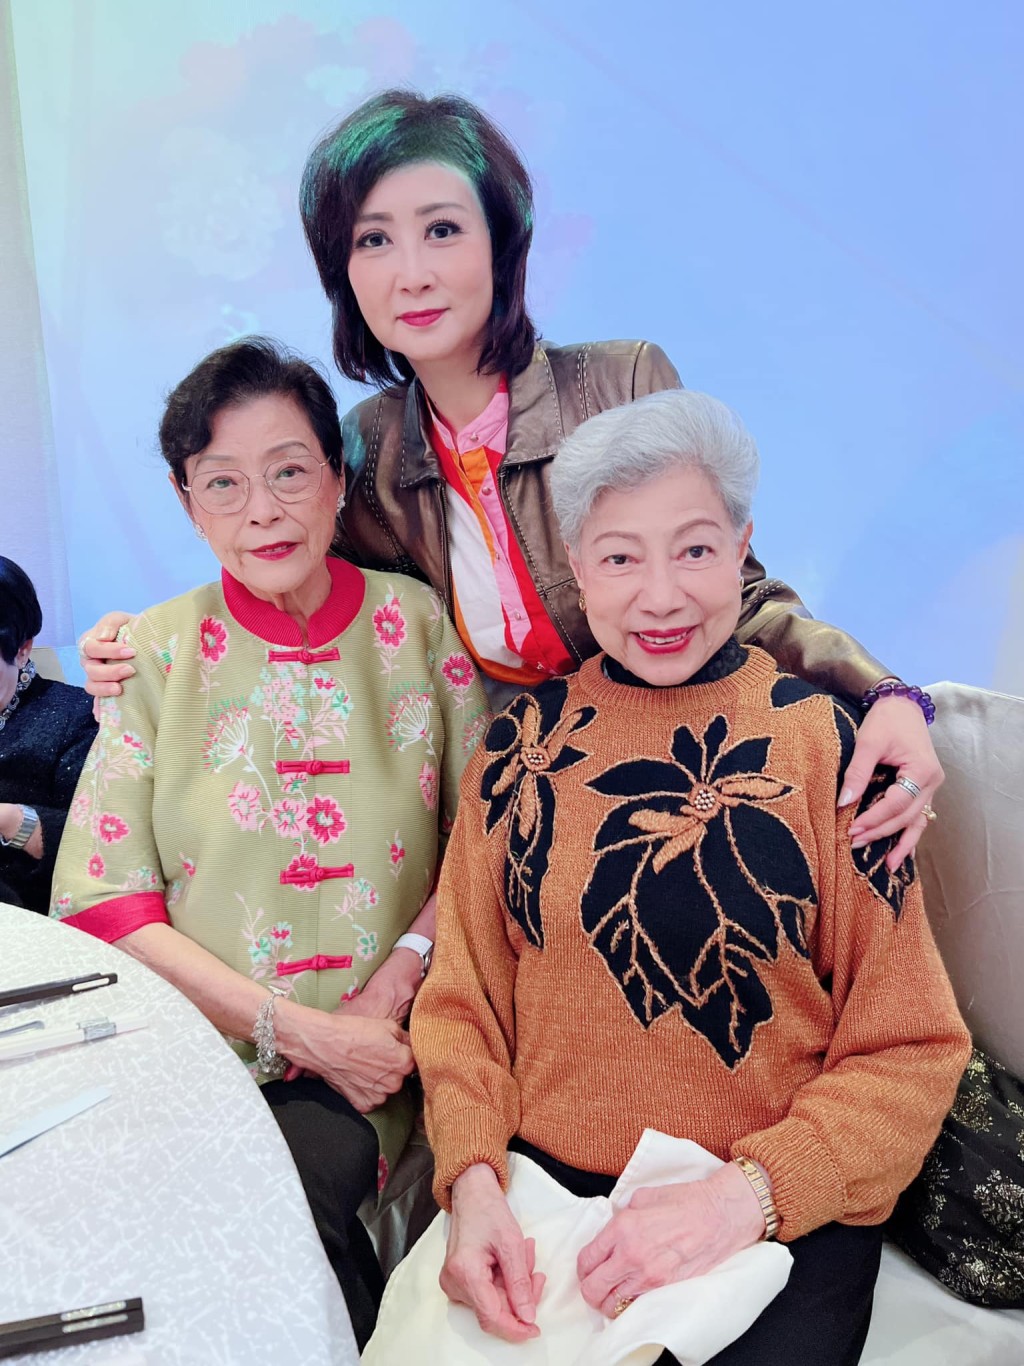 譚淑瑩與梁葆貞（左）及羅蘭兩位前輩合照。